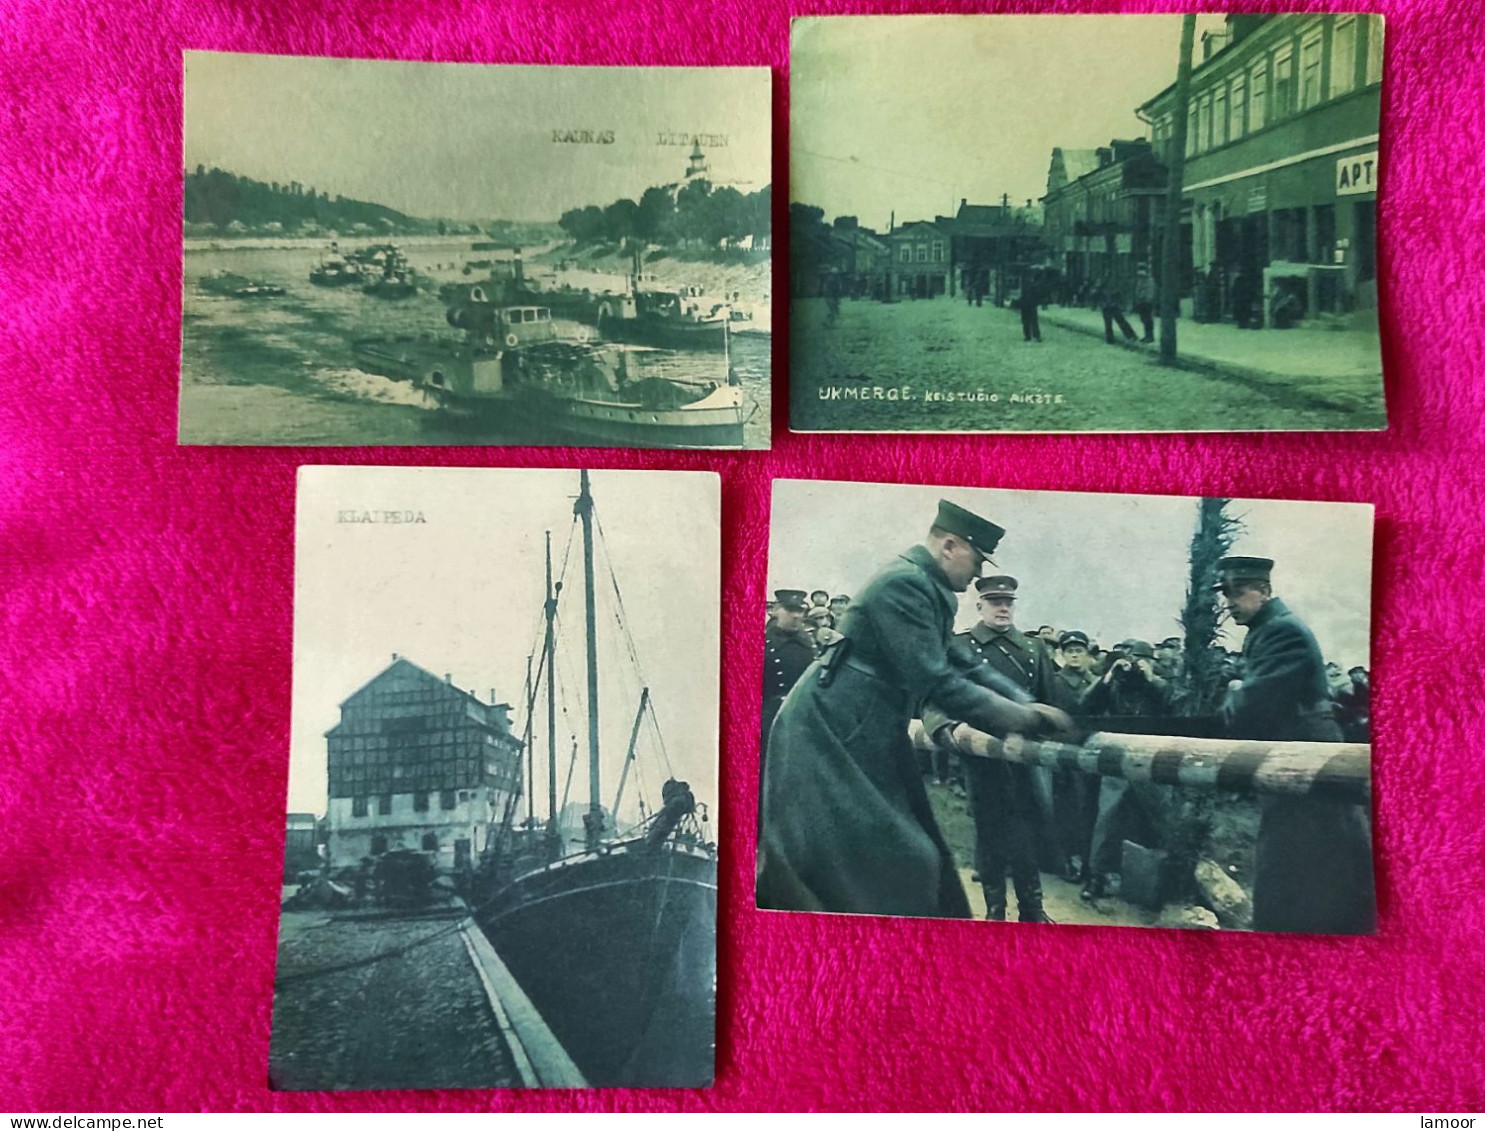 4  Feldpostkarten  Ansichtskarten Post   Litauen Lithuania Lietuva - Guerre 1939-45